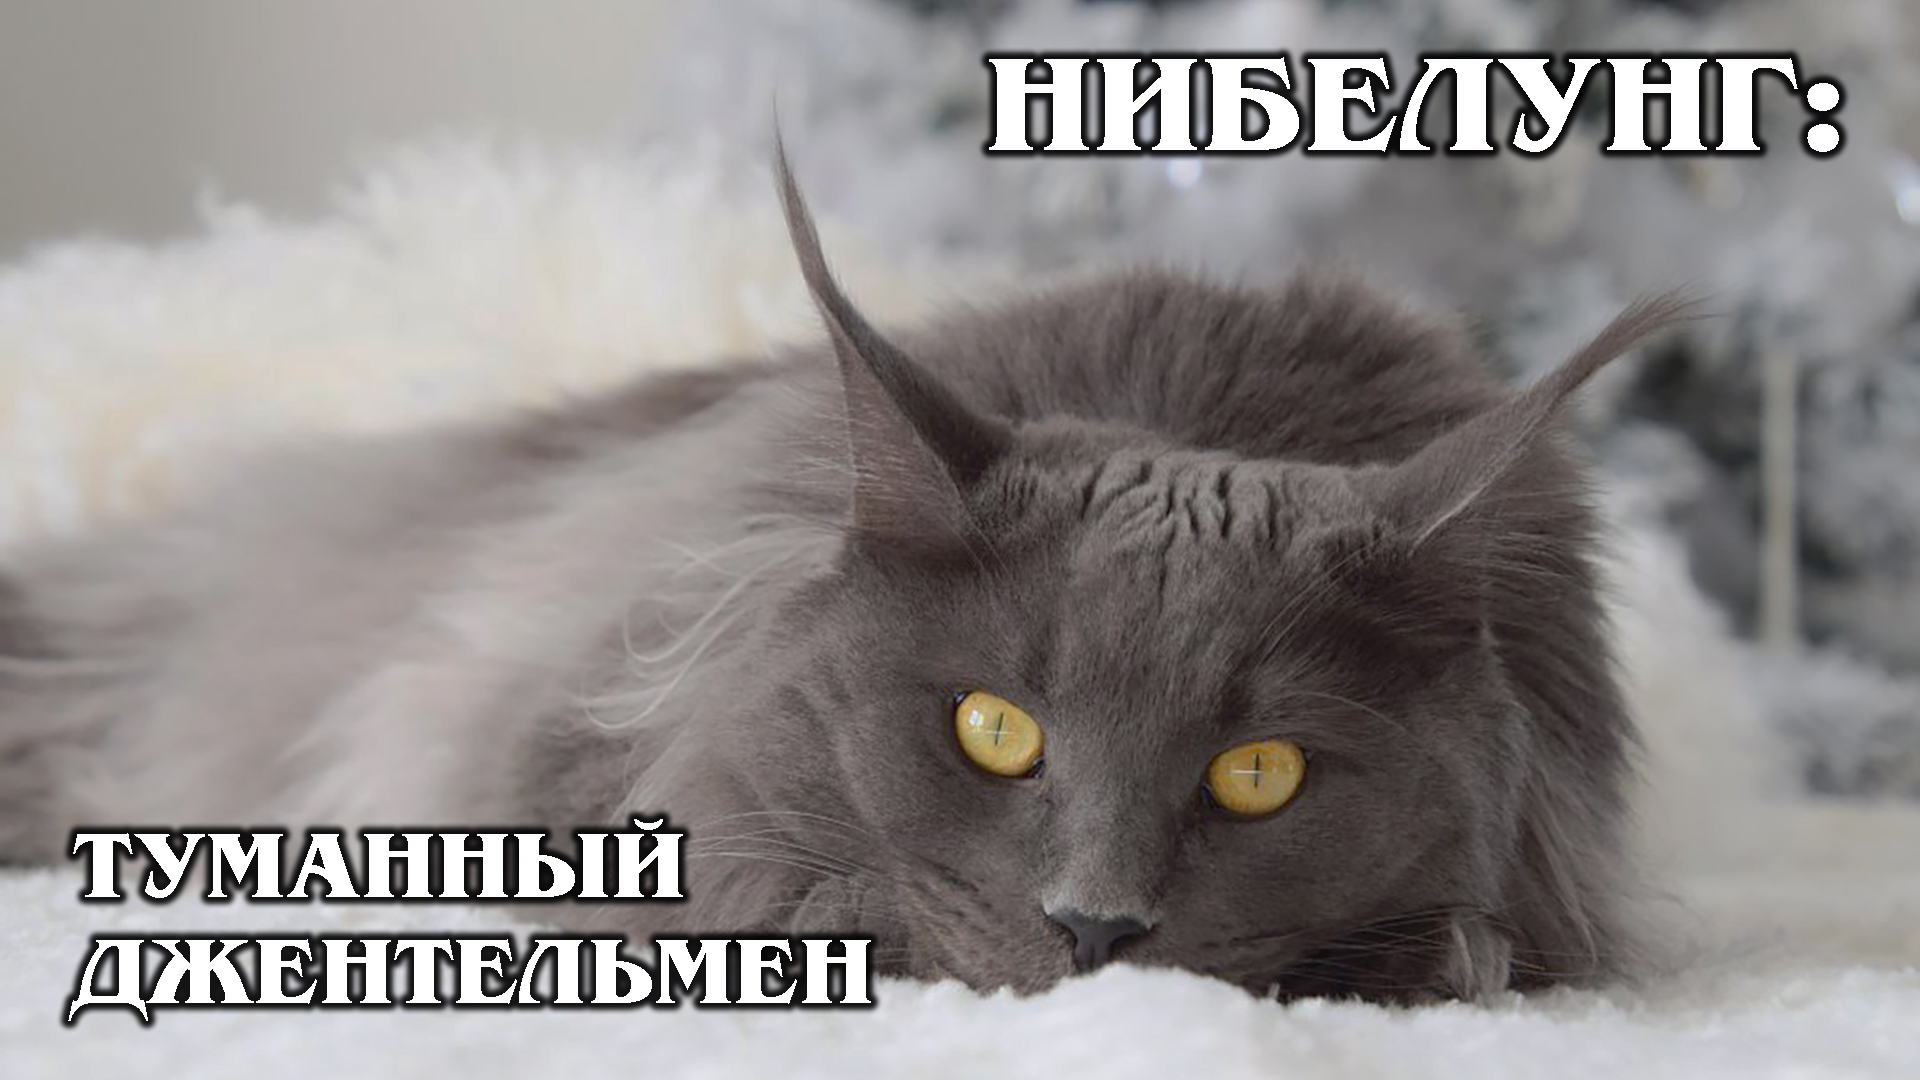 НИБЕЛУНГ: Родственник русской голубой кошки | Интересные факты про кошек и животных | Породы кошек